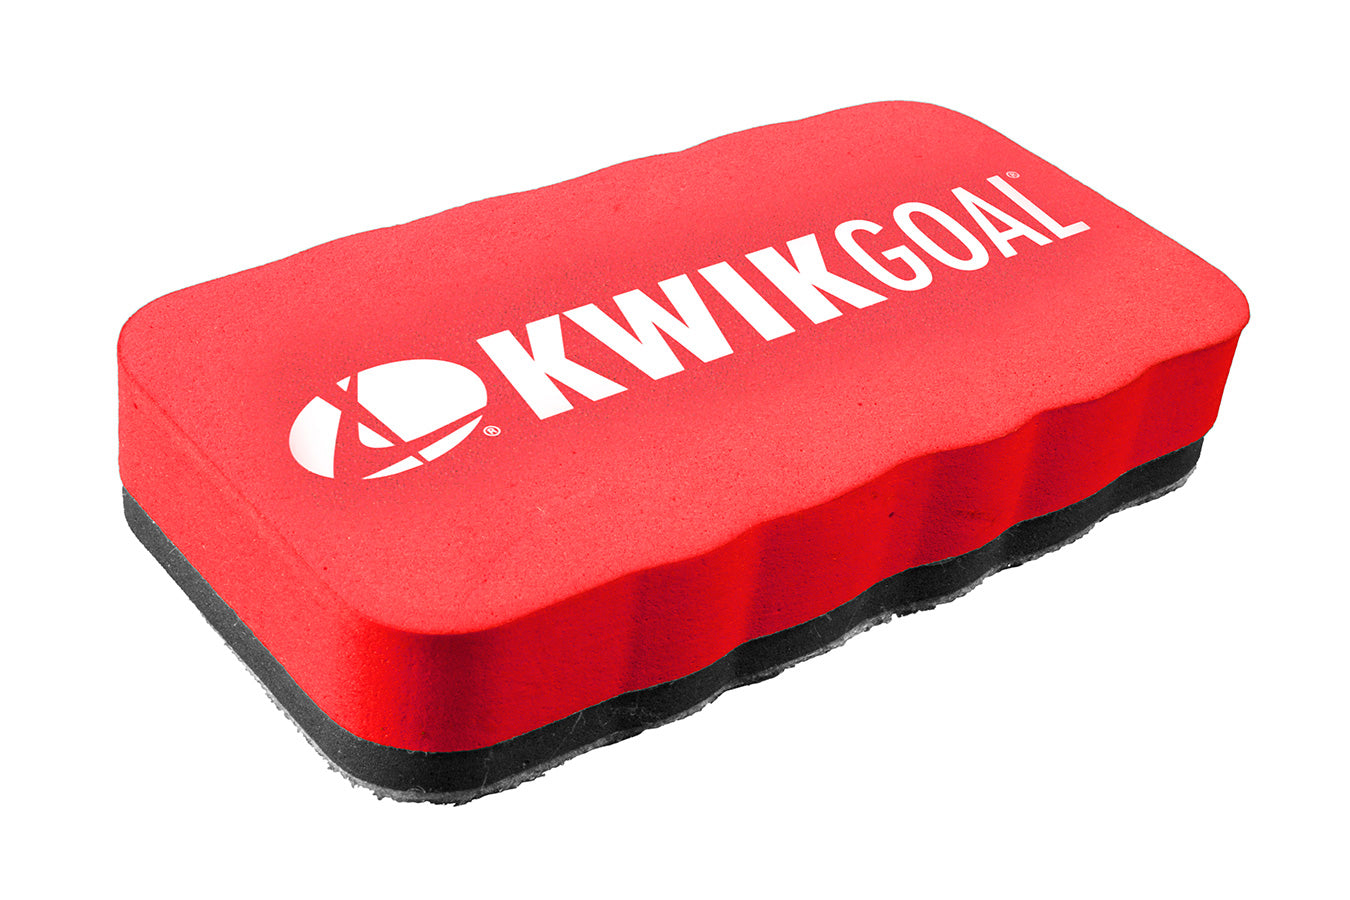 Kwikgoal Large Dry Erase Board | 18B1101 Field equipment Kwikgoal 